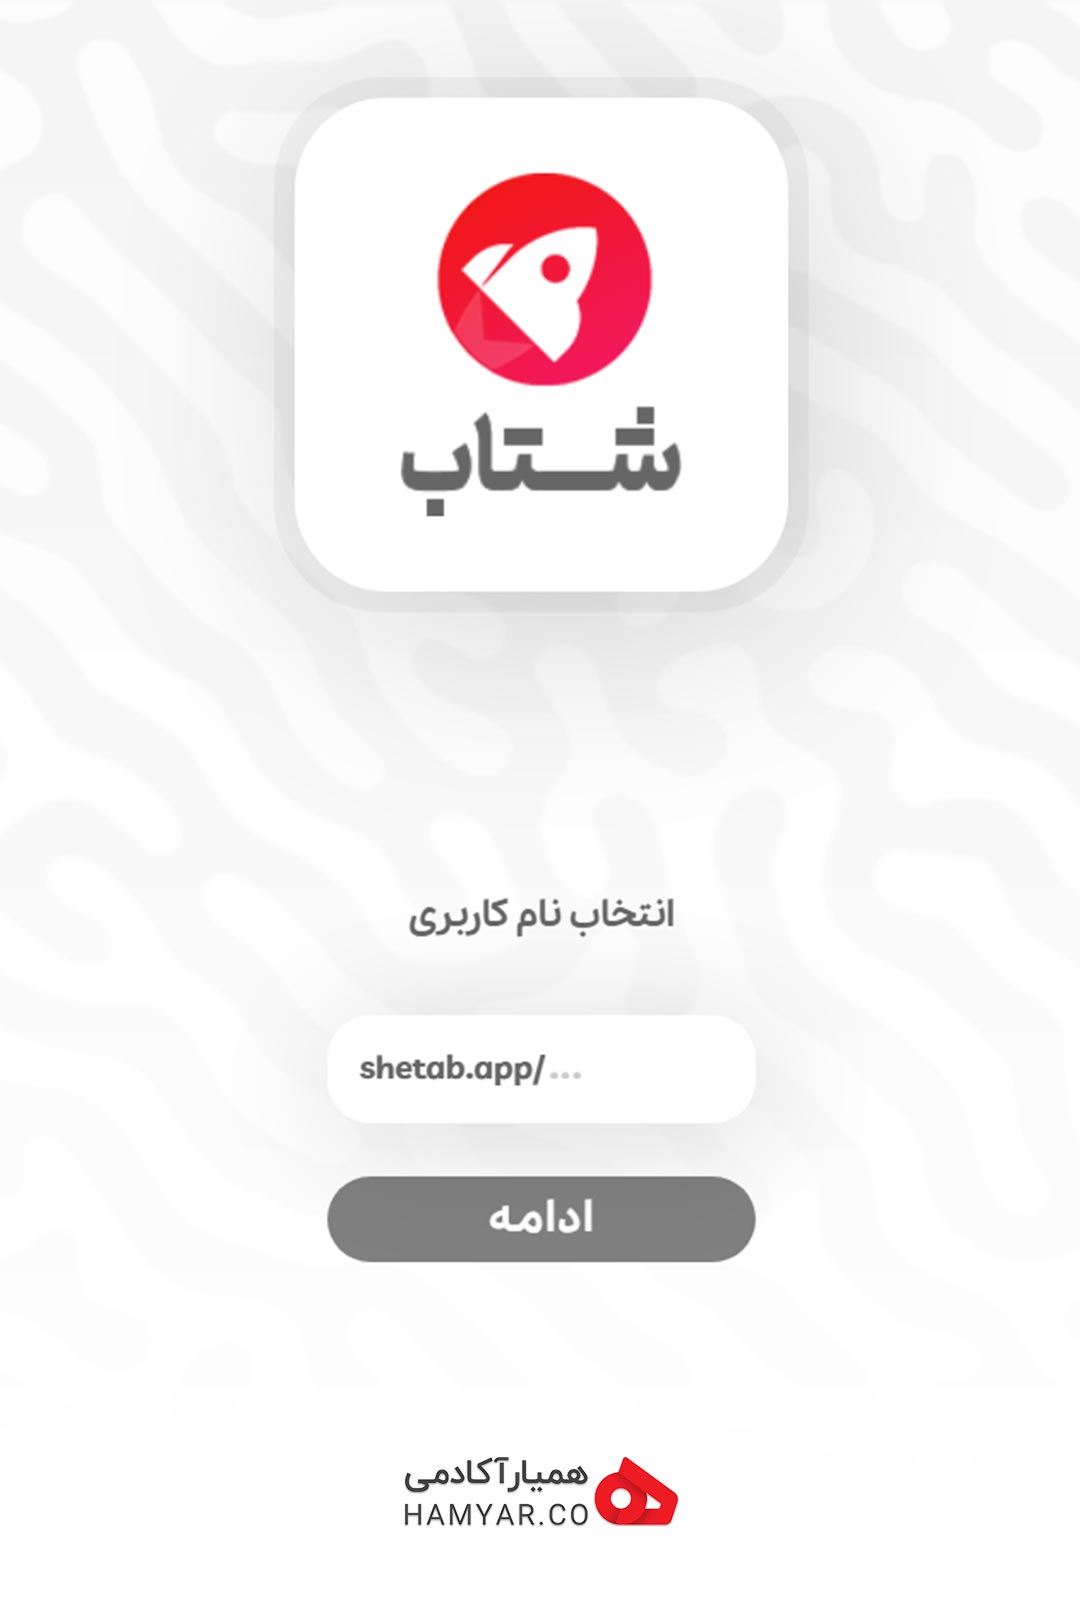 انتخاب نام کاربری در اکسپلور ایرانی